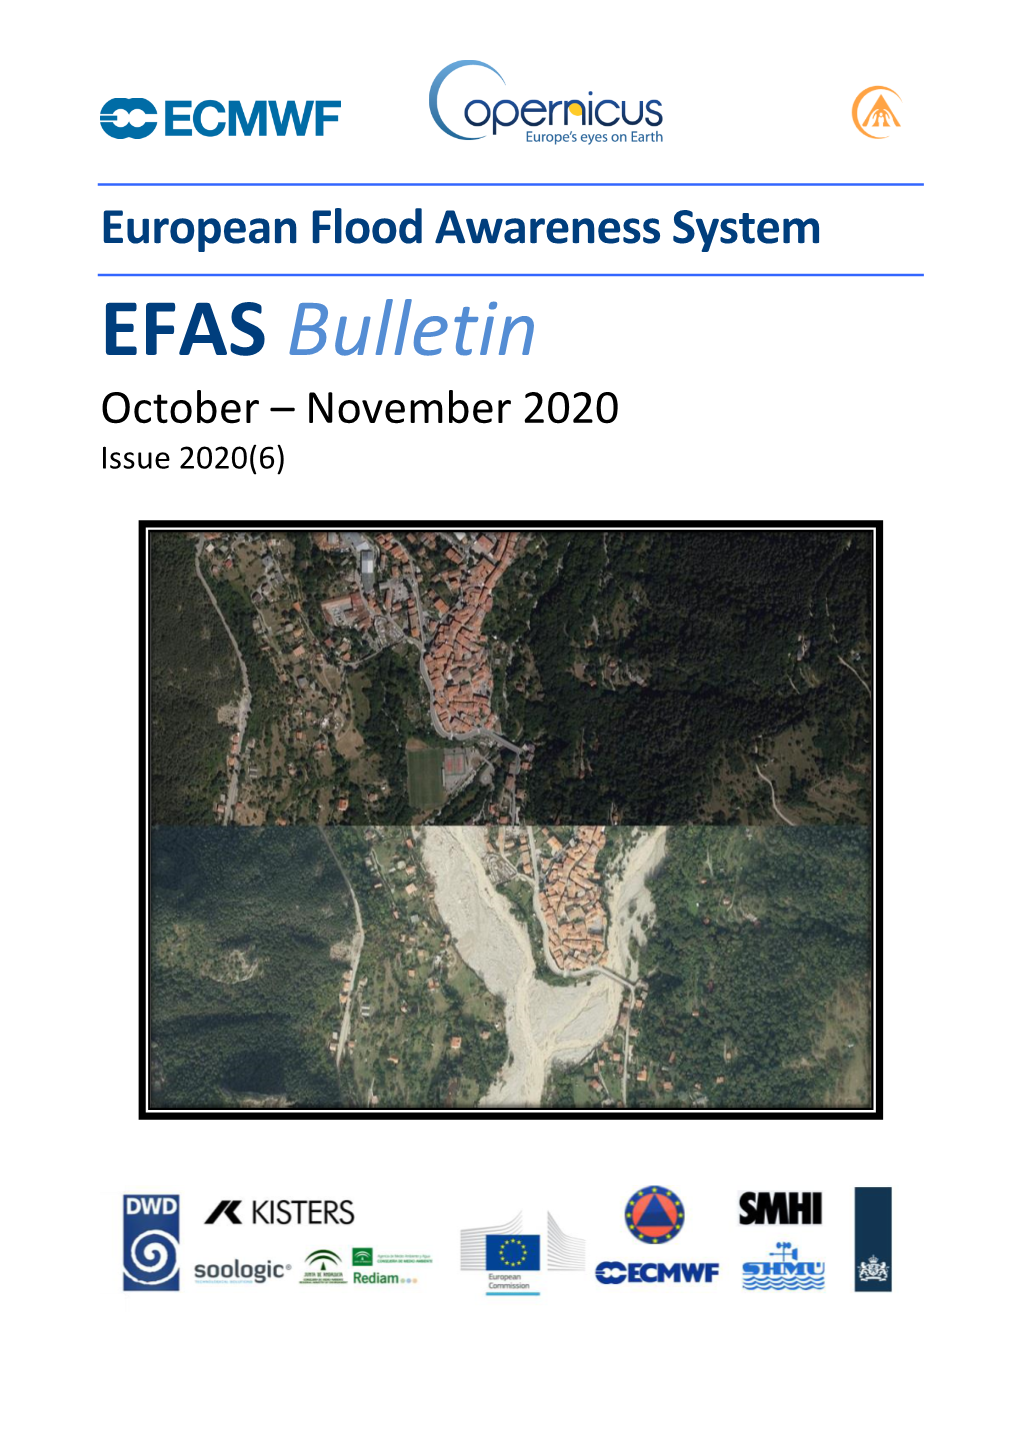 EFAS Bimonthly Bulletin Oct-Nov 2012 V1.Docx